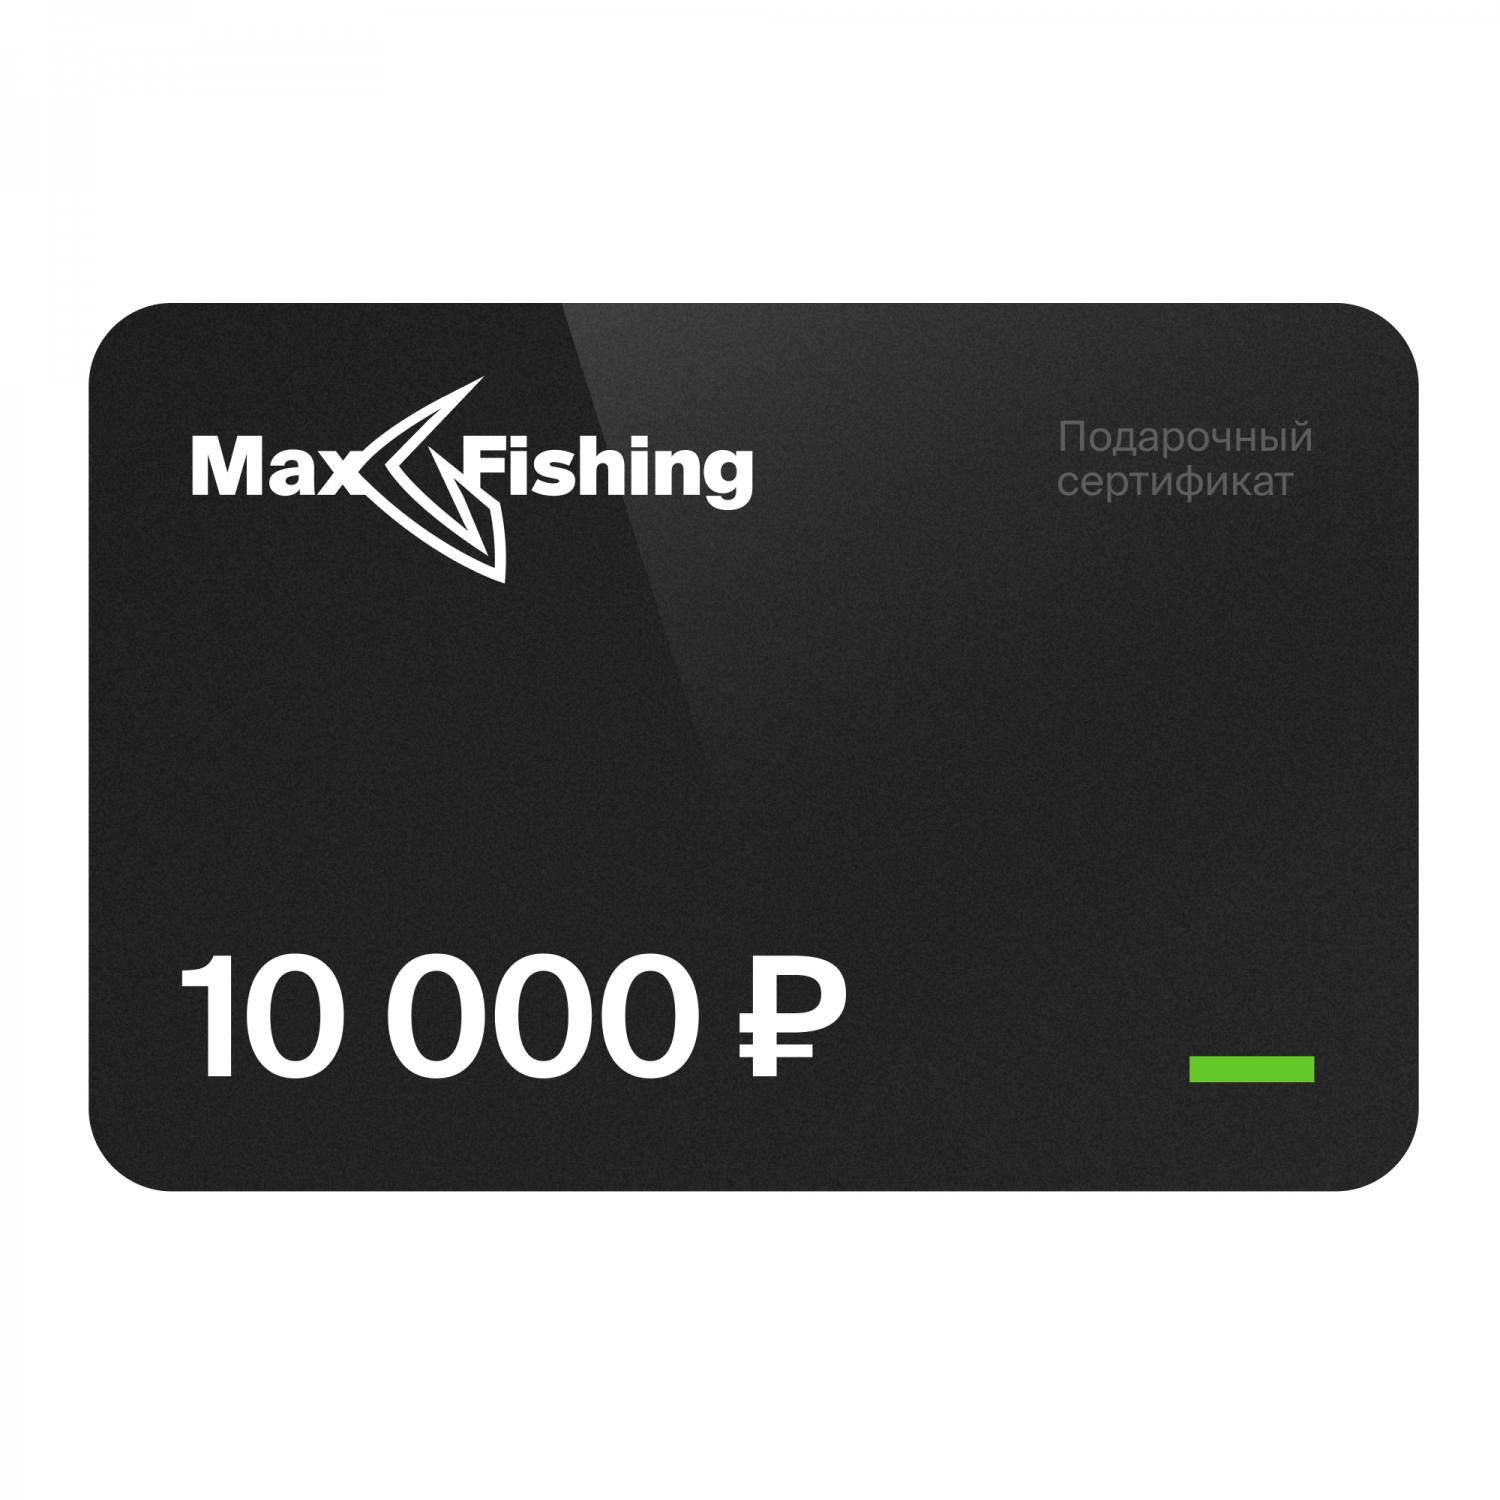 Подарочный сертификат MaxFishing 10 000 ₽ подарочный сертификат на 5 000 рублей